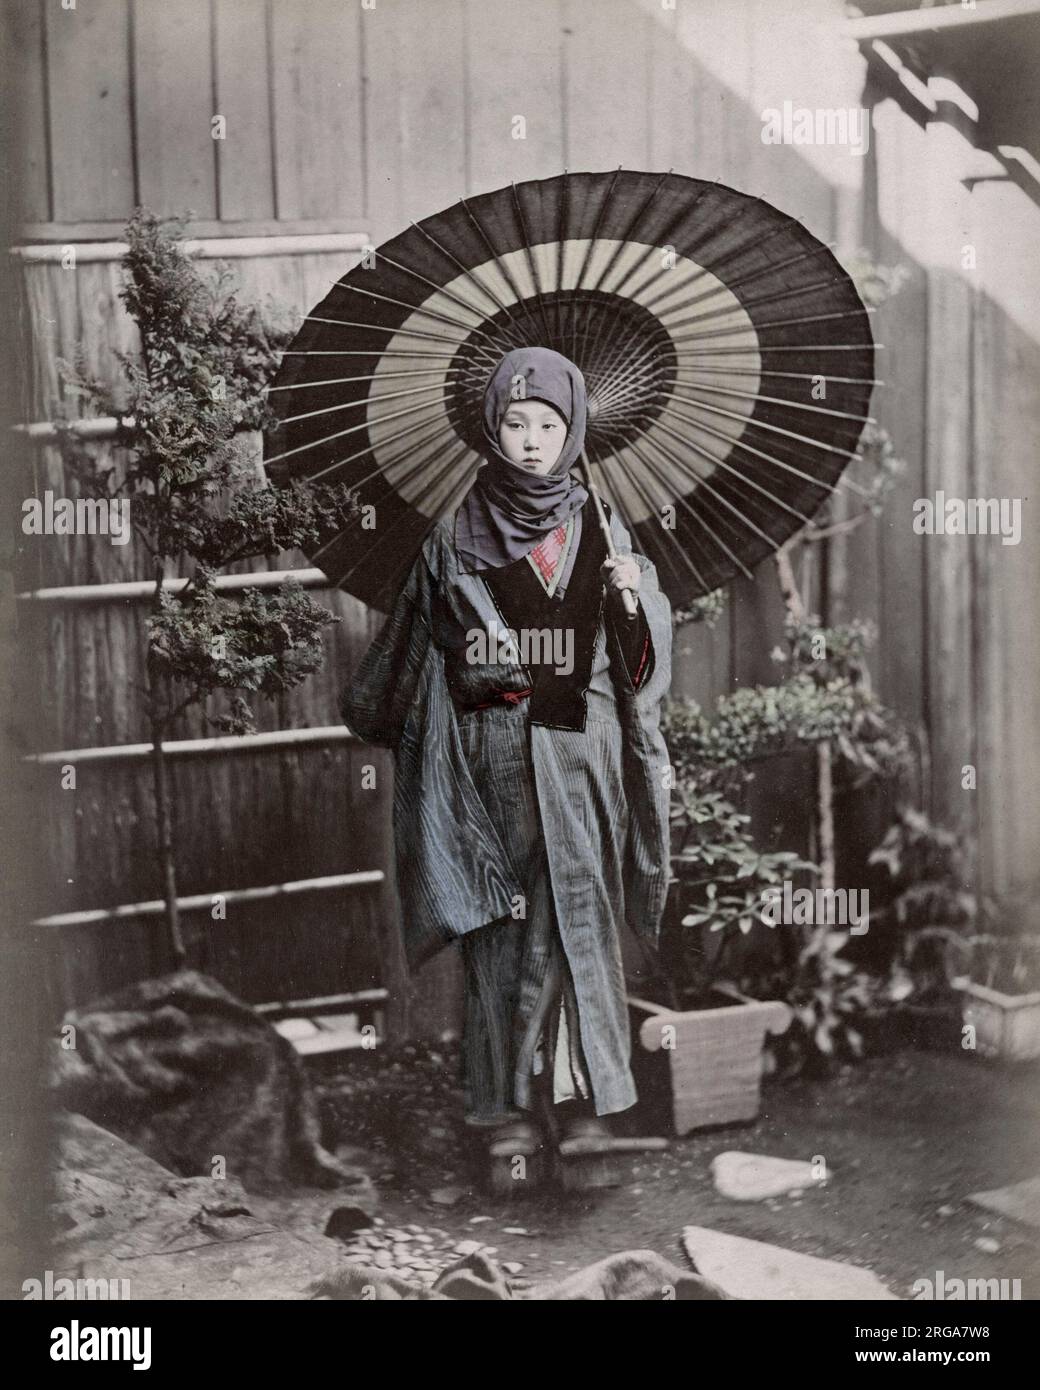 Junge Japanerin im Winterkostüm mit Regenschirm. Vintage 19. Jahrhundert Foto. Stockfoto